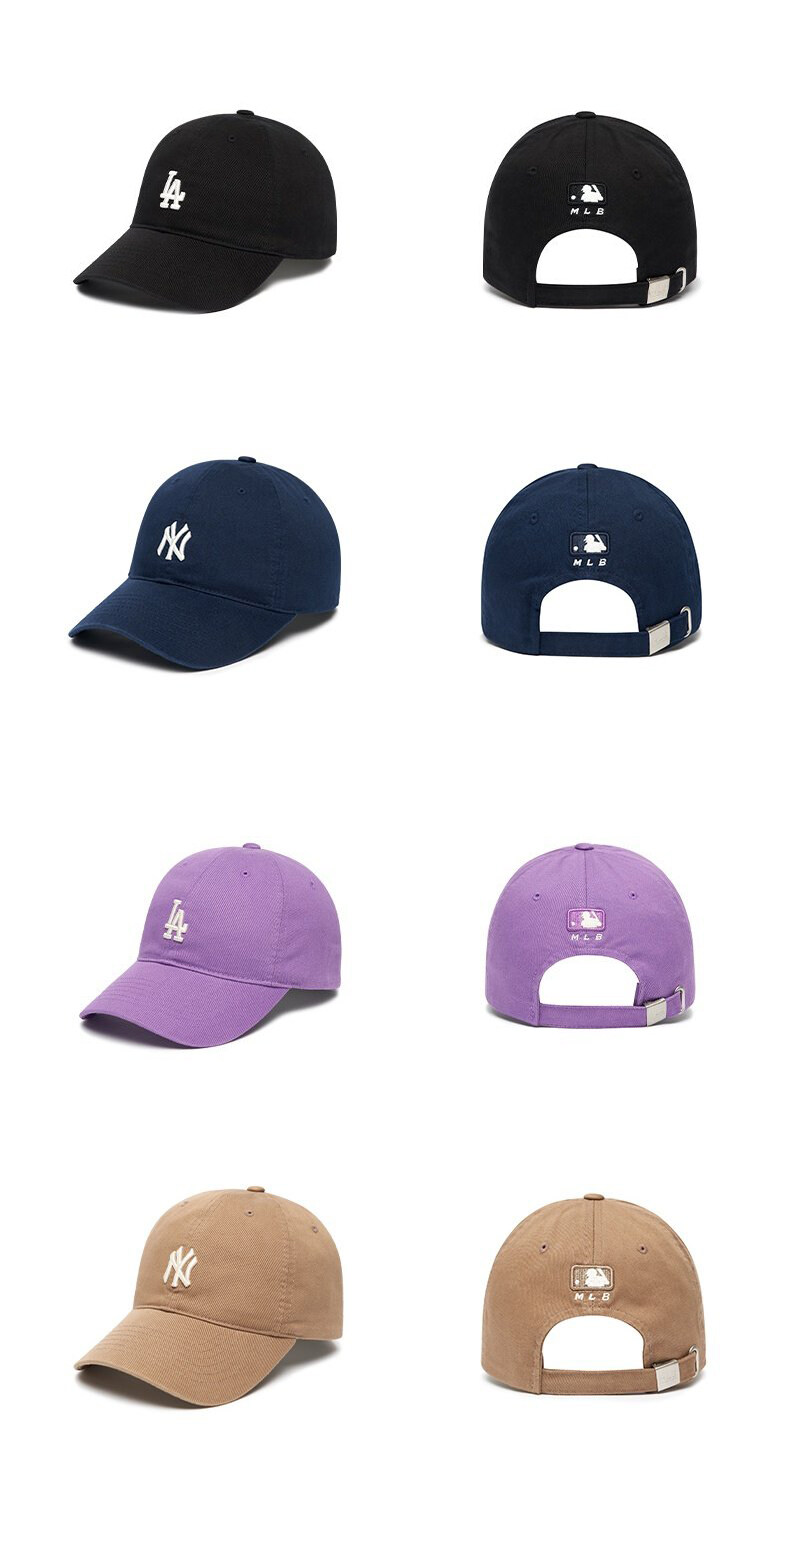 ภาพอธิบายเพิ่มเติมของ MLB หมวก Unisex รุ่น หมวกเบสบอล NY YANKEES ROOKIE BALL CAP ของแท้ mlb hat